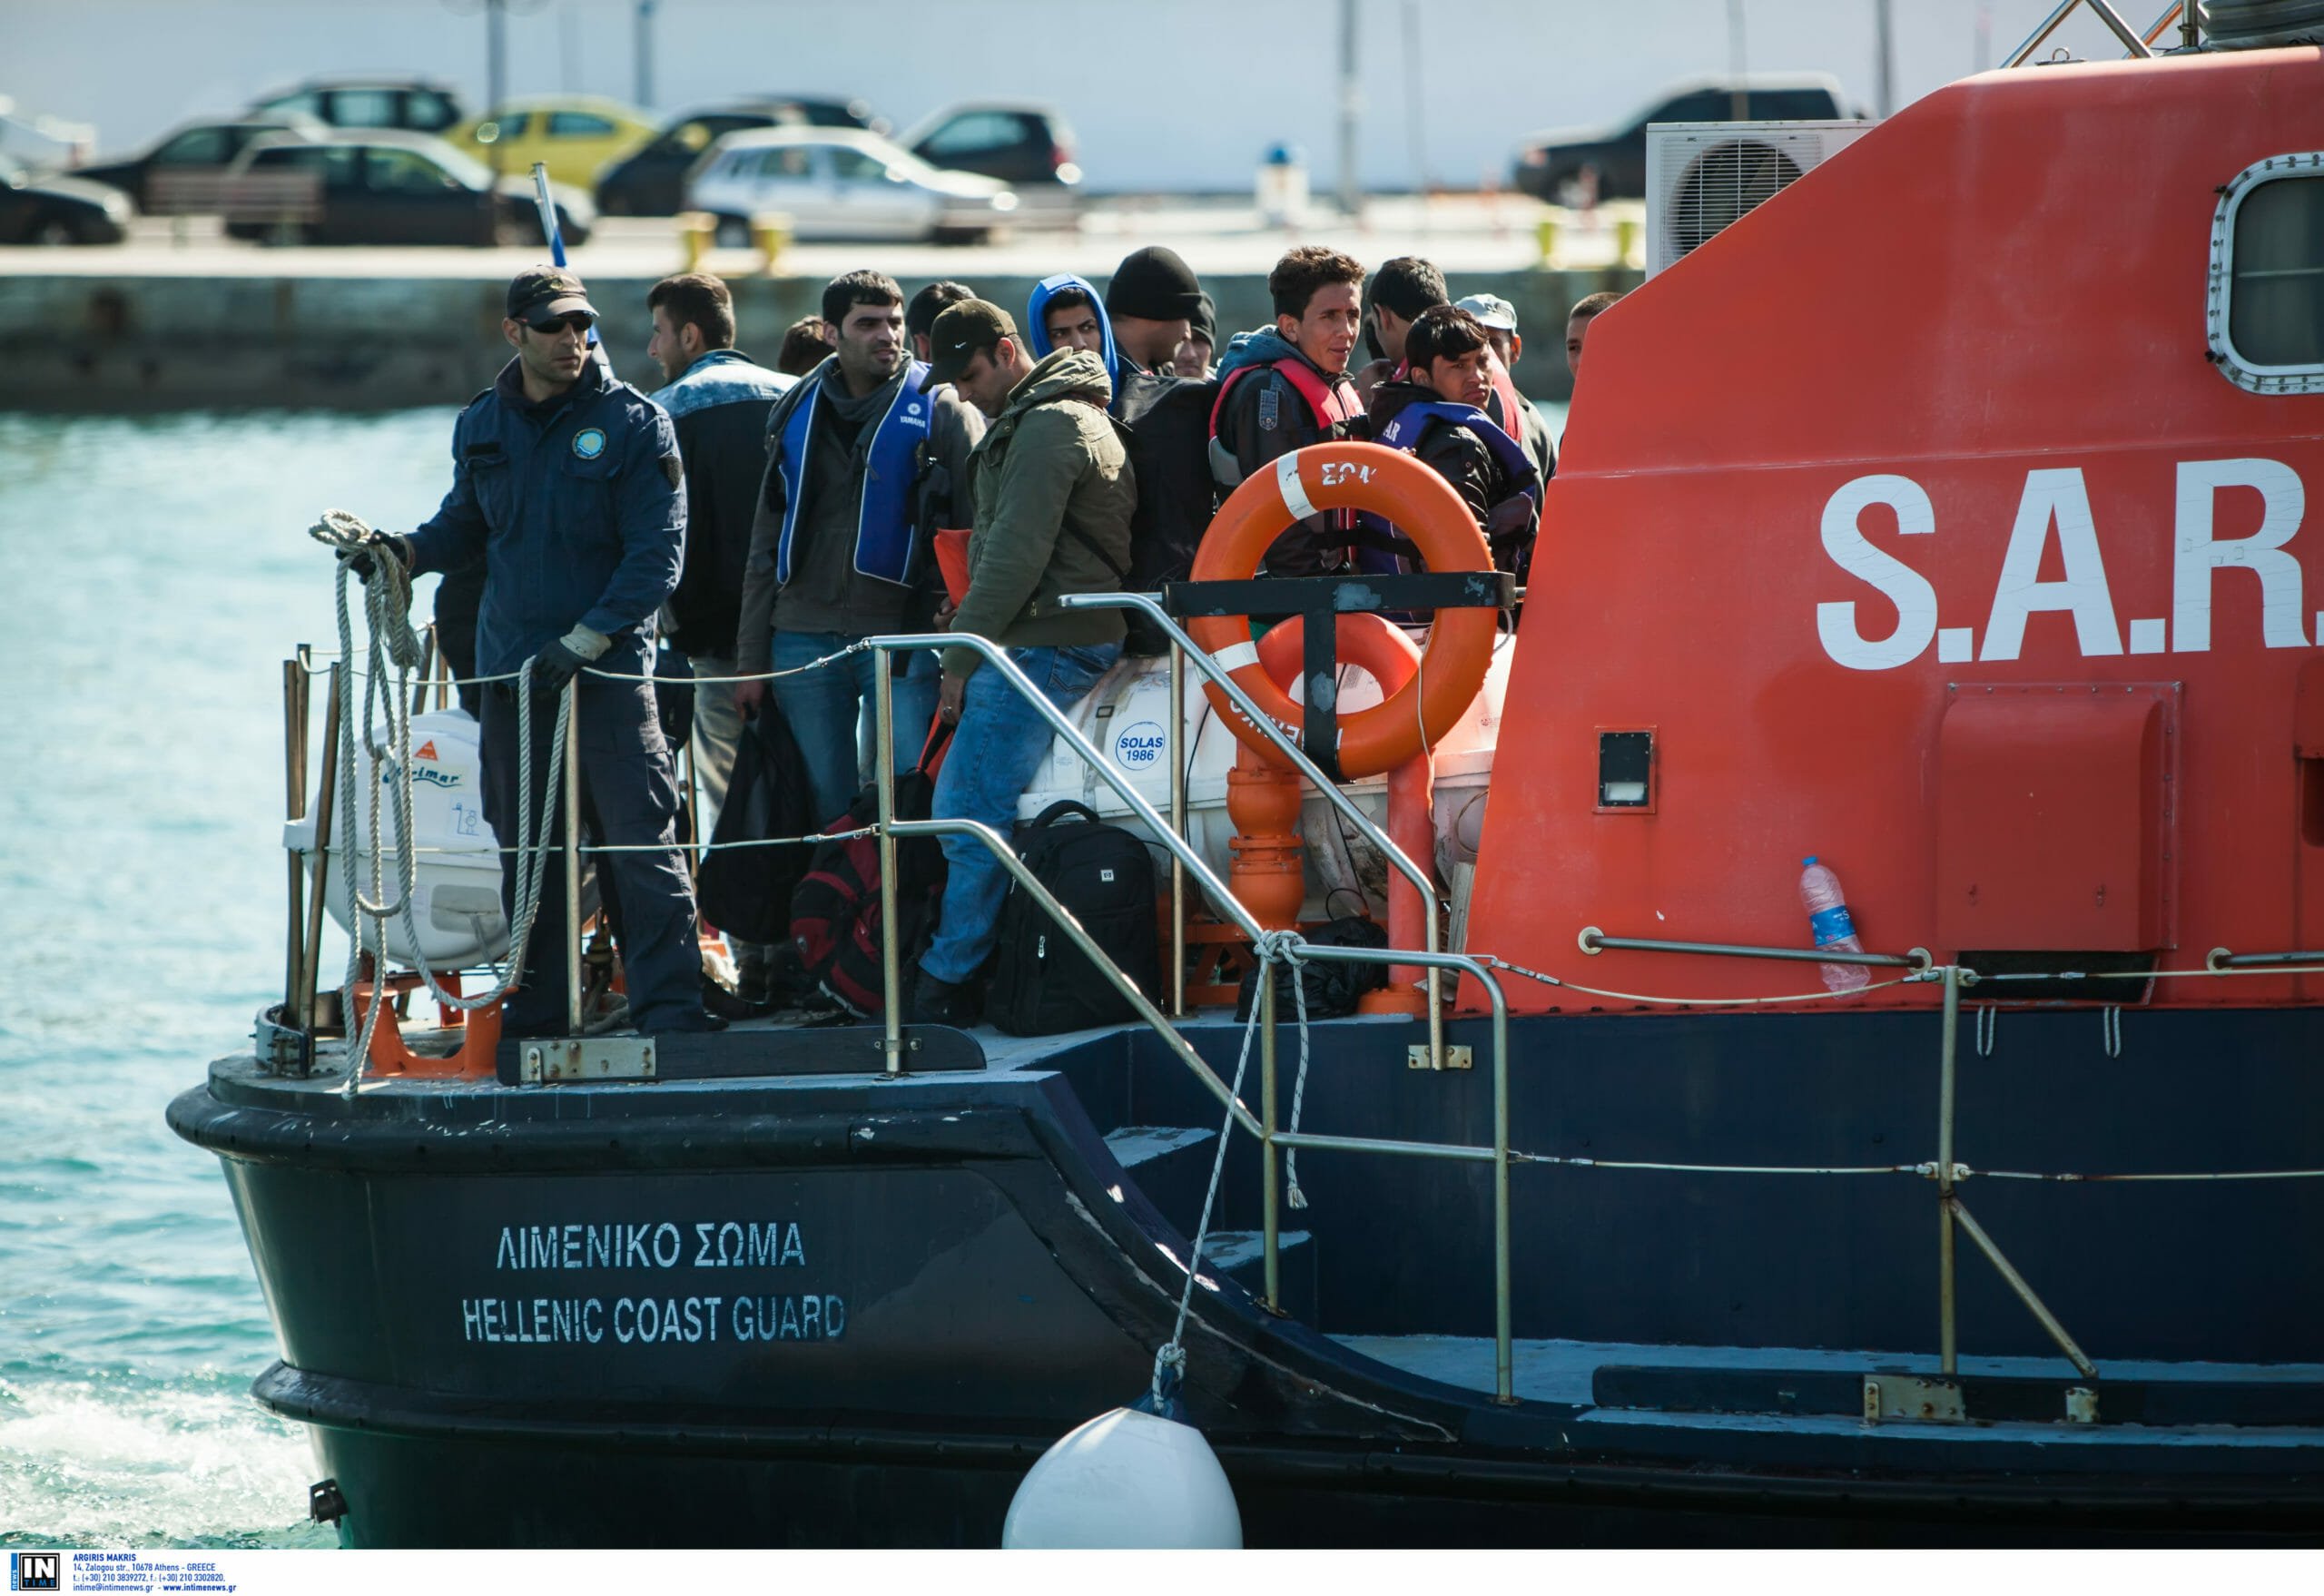 Δήλωση Υπουργού Μετανάστευσης και Ασύλου, κ. Νότη Μηταράκη για τις επαναπροωθήσεις μεταναστών